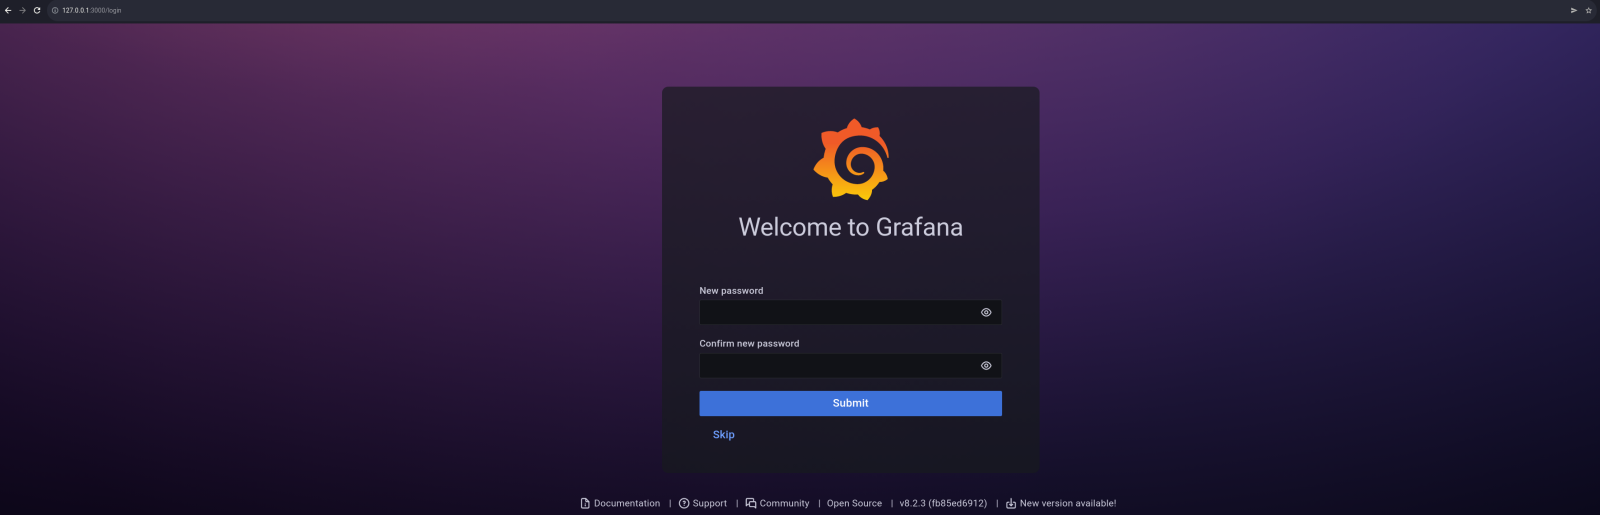 grafana-change-password